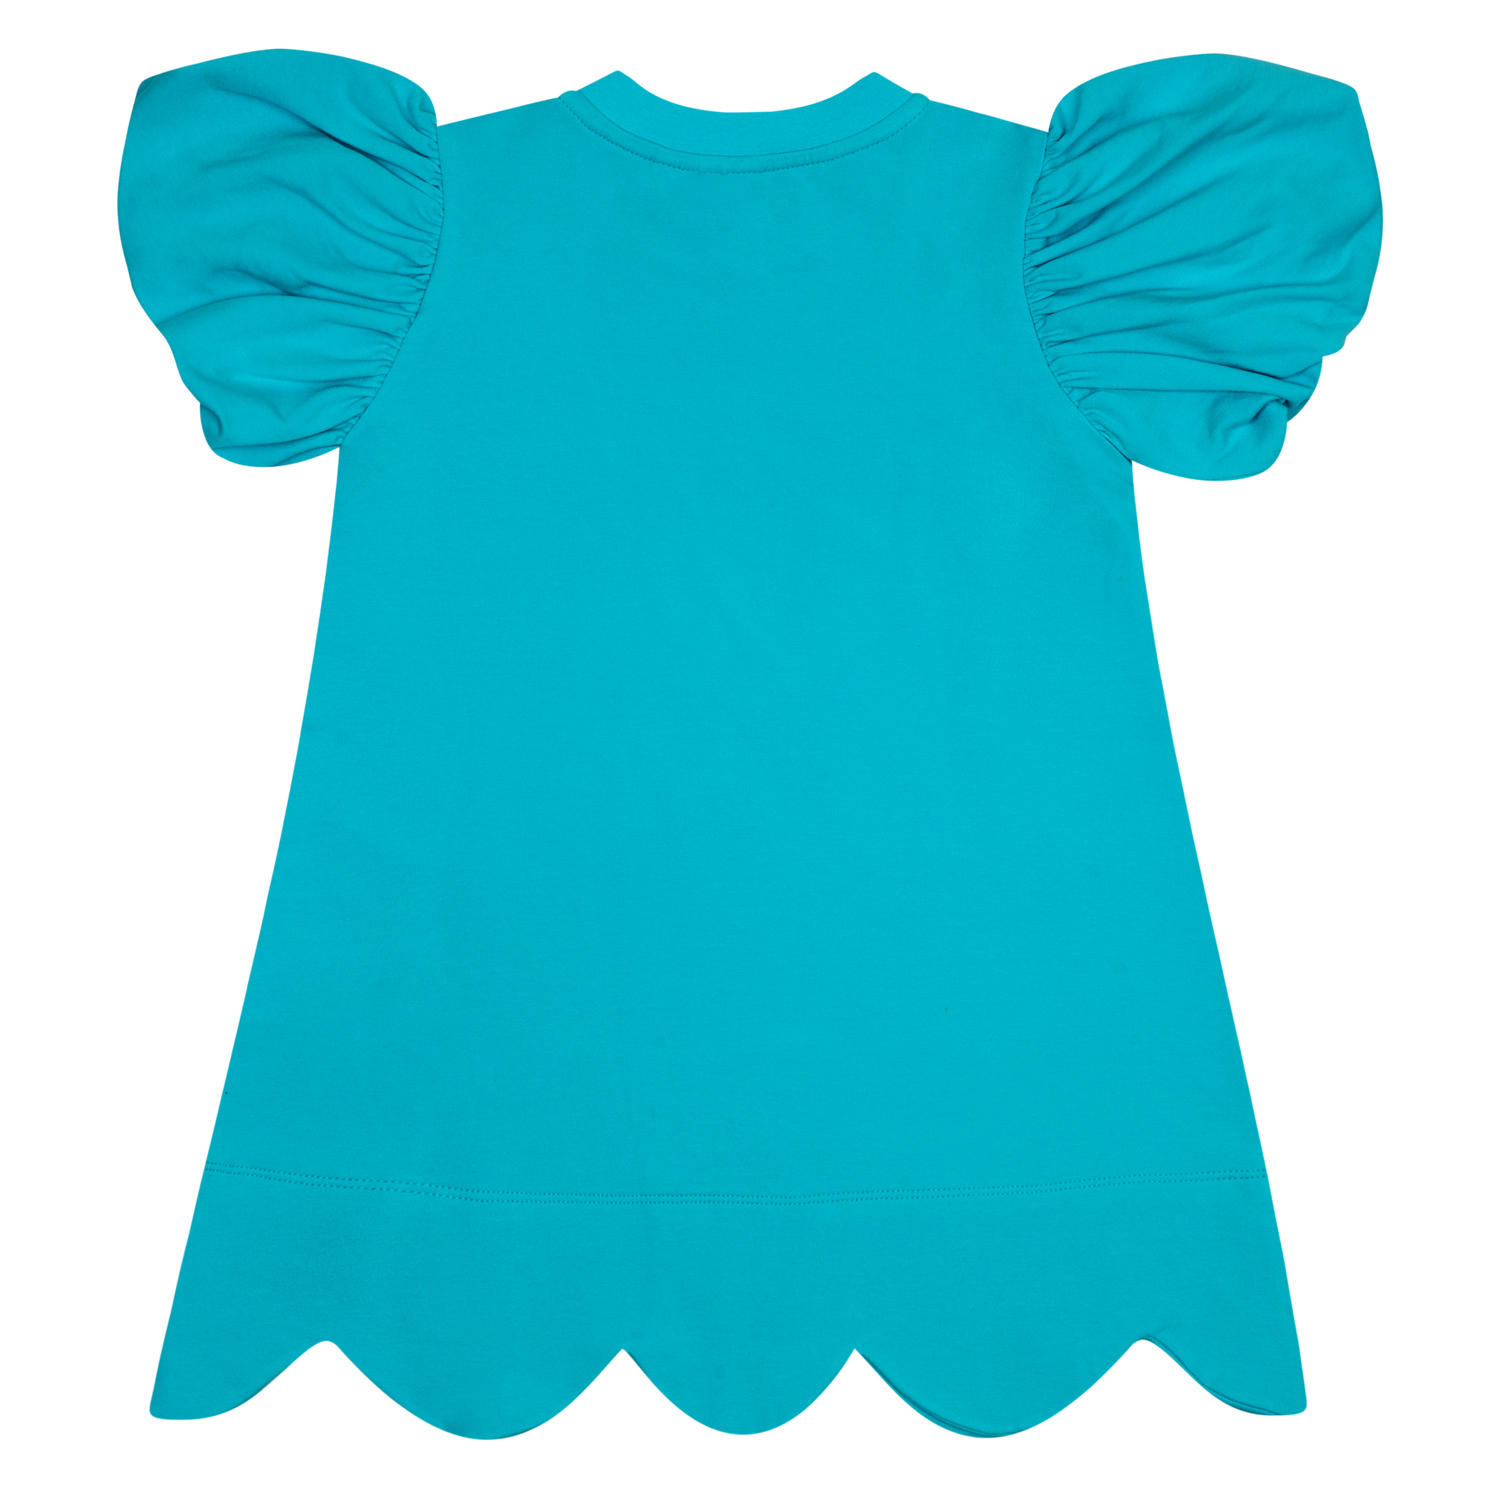 A’dee Olympia blauwe jurk met schelp print achterkant